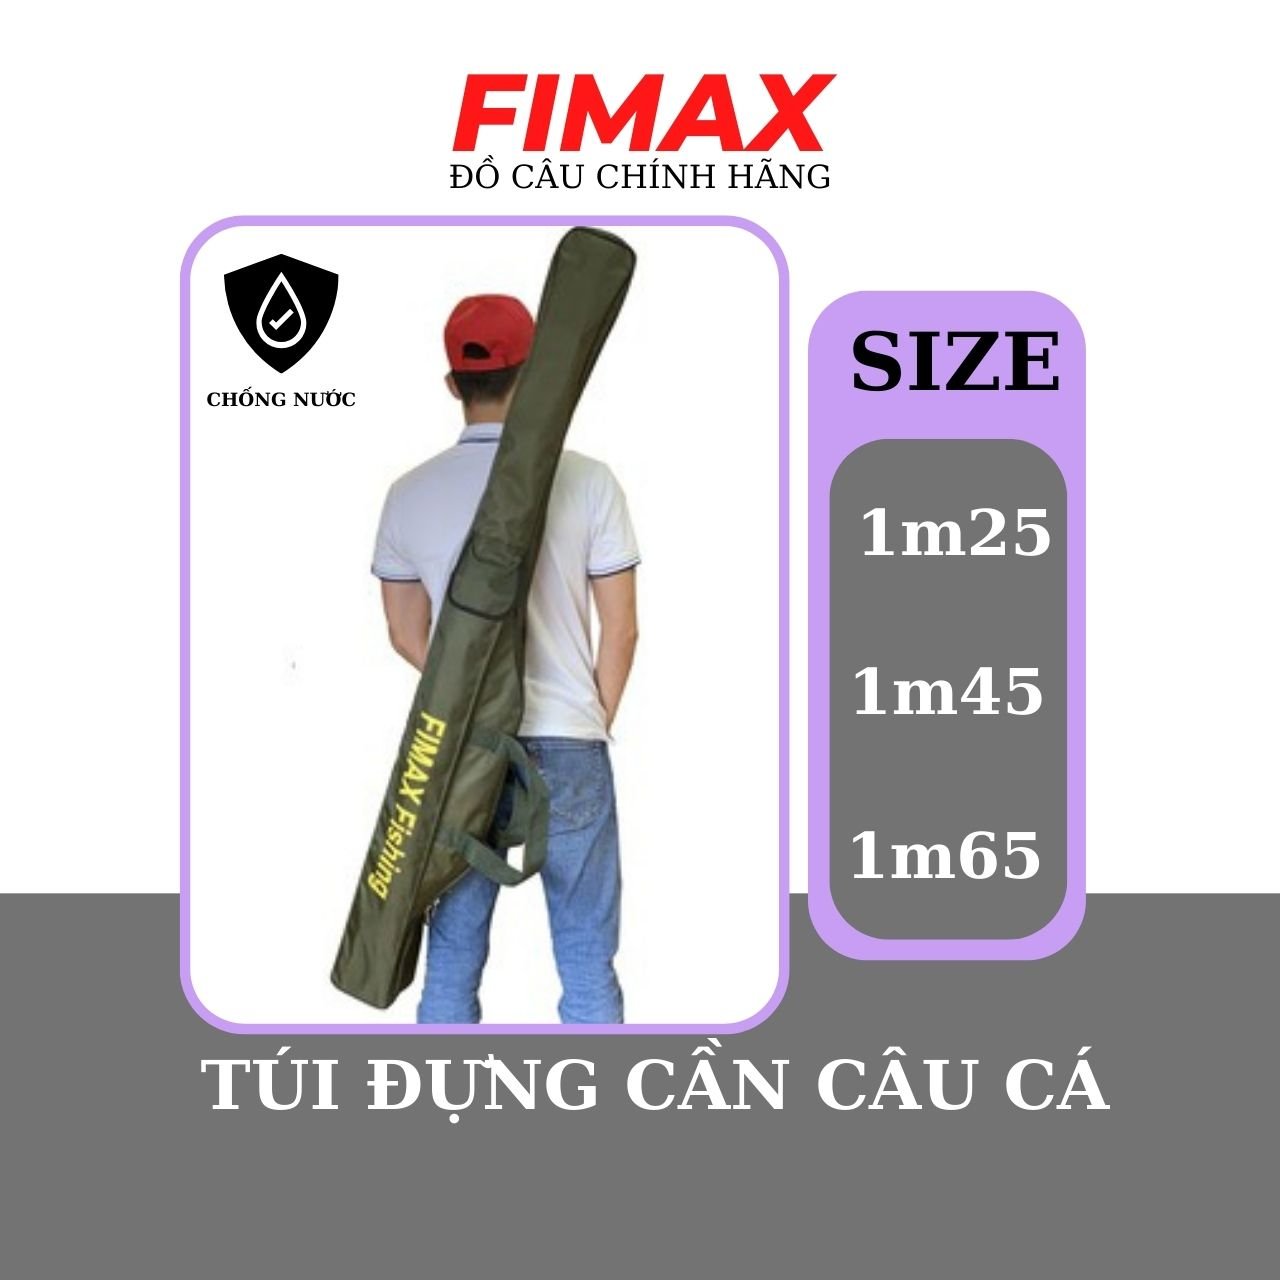 [HOT] Túi đựng cần câu Fimax Fishing 3 ngăn cao cấp siêu rộng đựng 4 đến 5 bộ cần máy, Bao đựng cần 2 khúc siêu bền dài 125cm, 145cm, 165cm